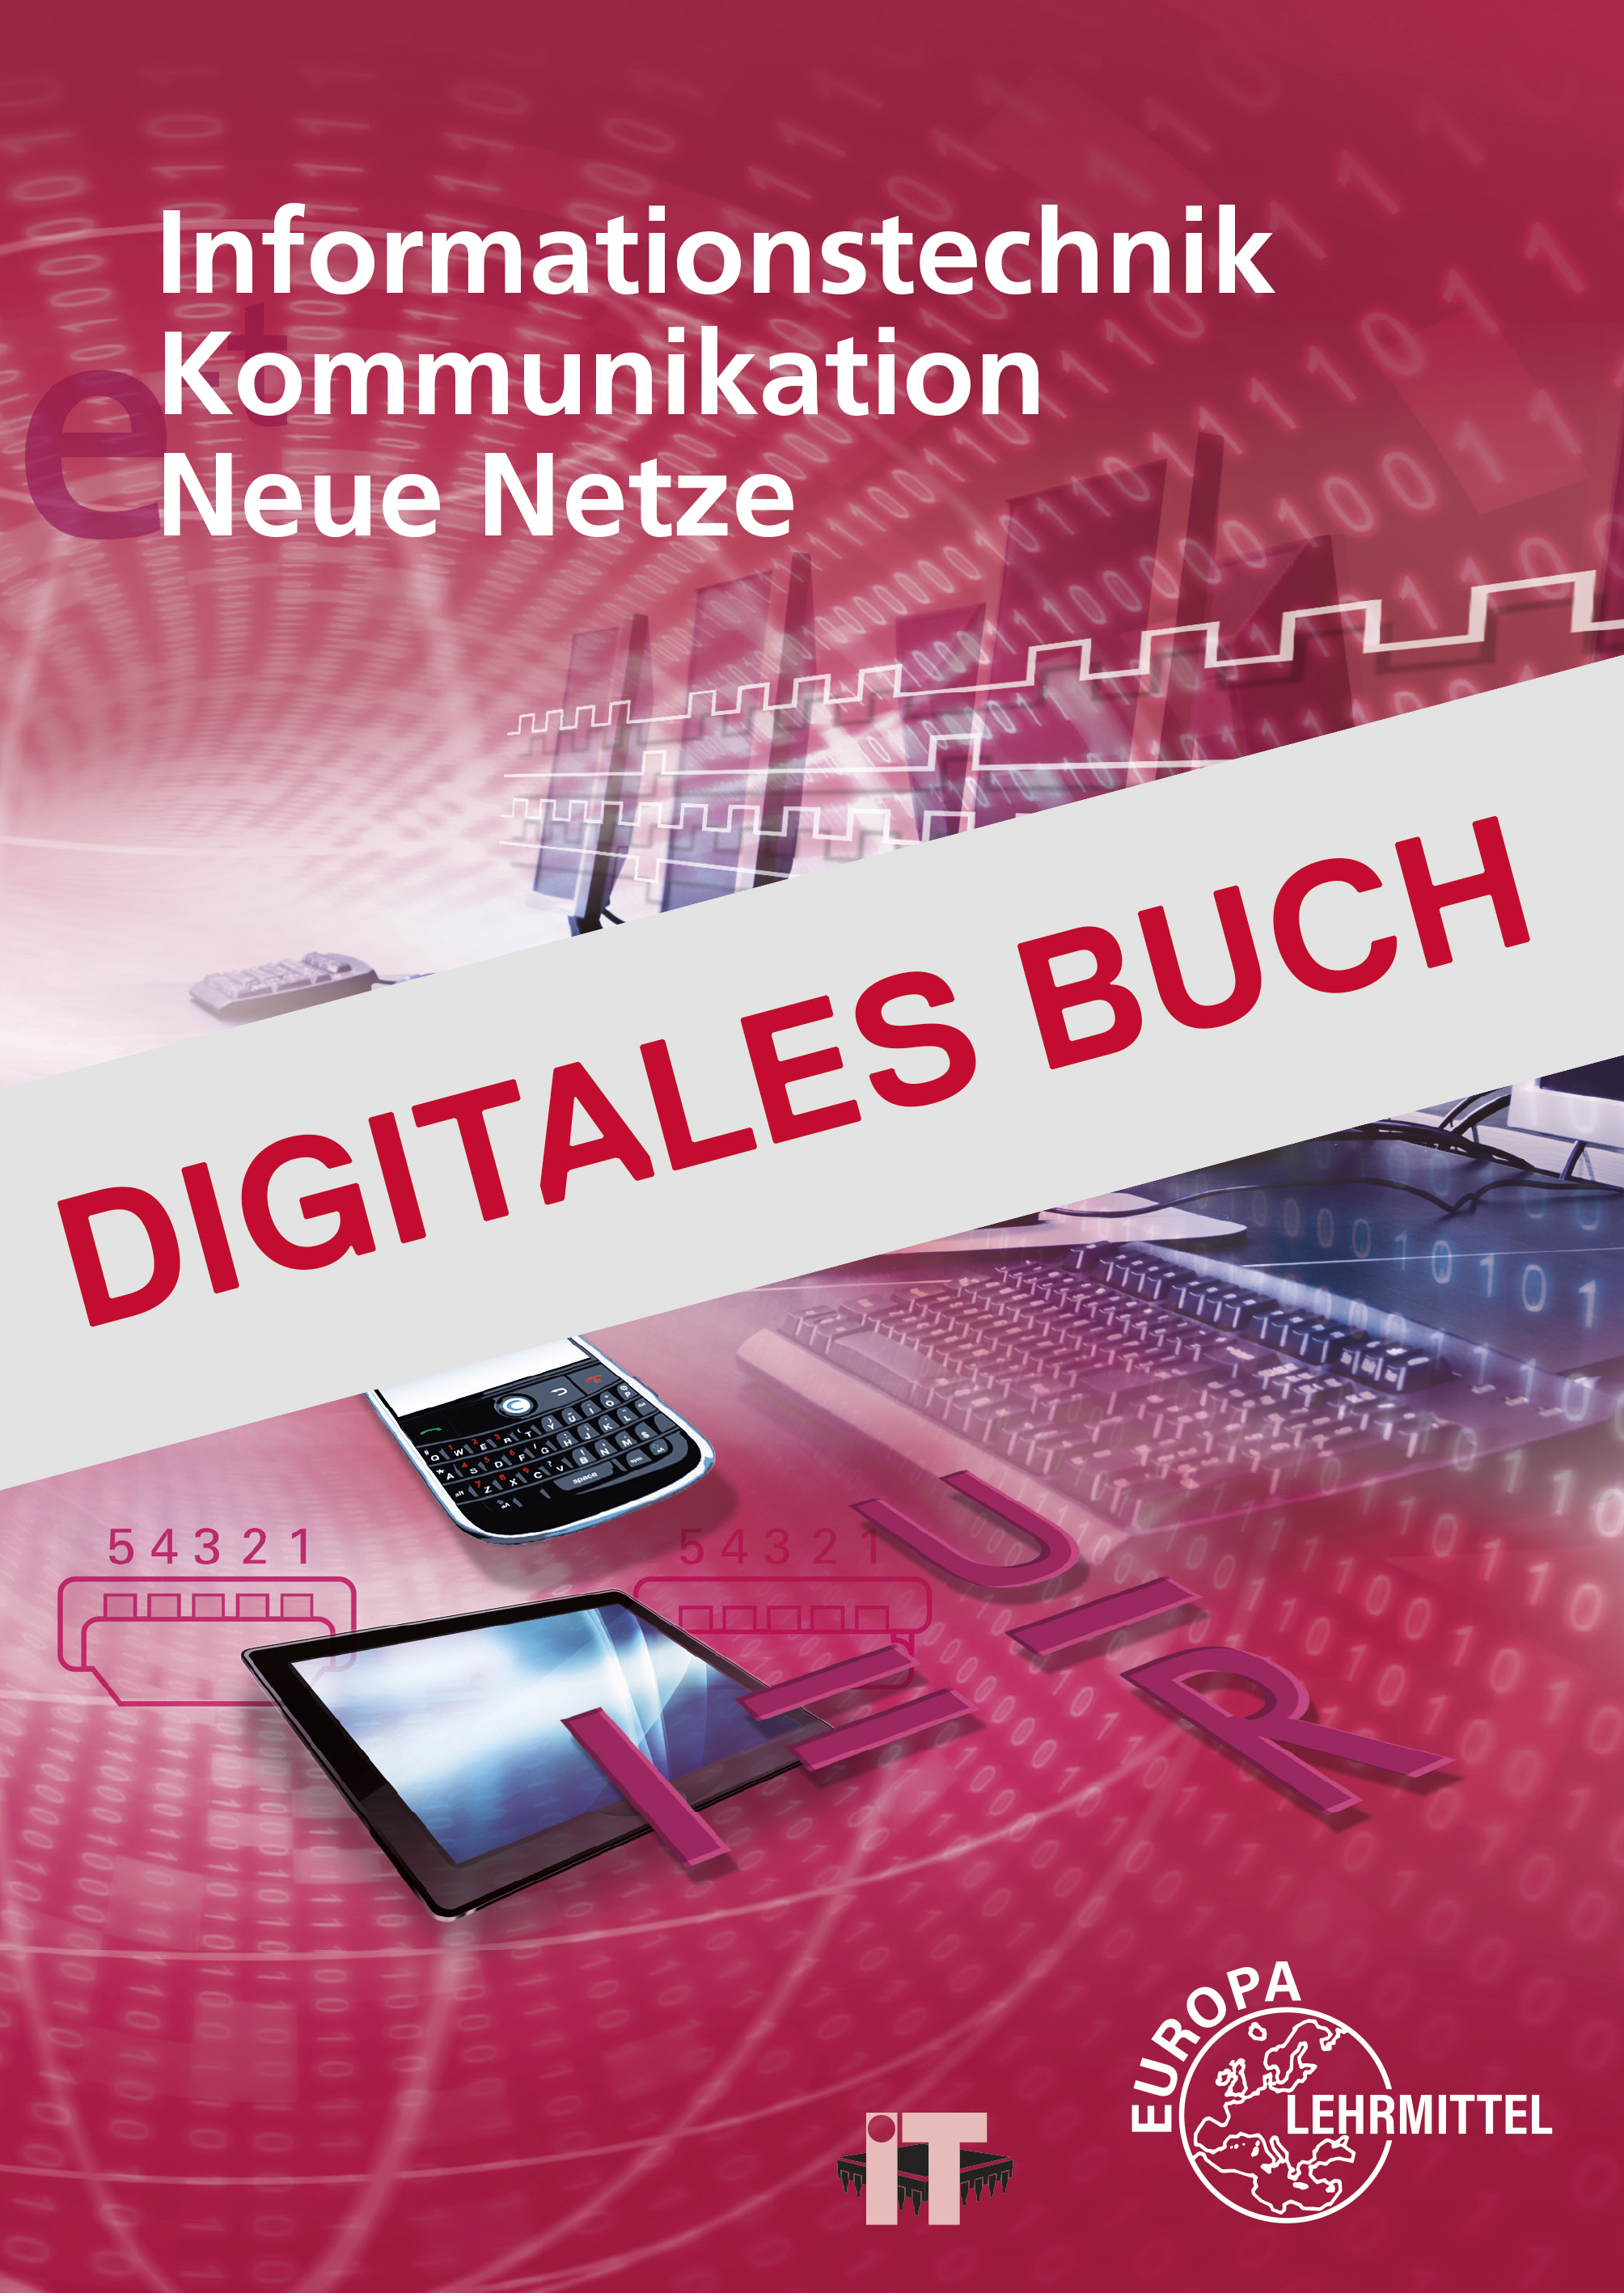 Informationstechnik, Kommunikation, Neue Netze - Digitales Buch